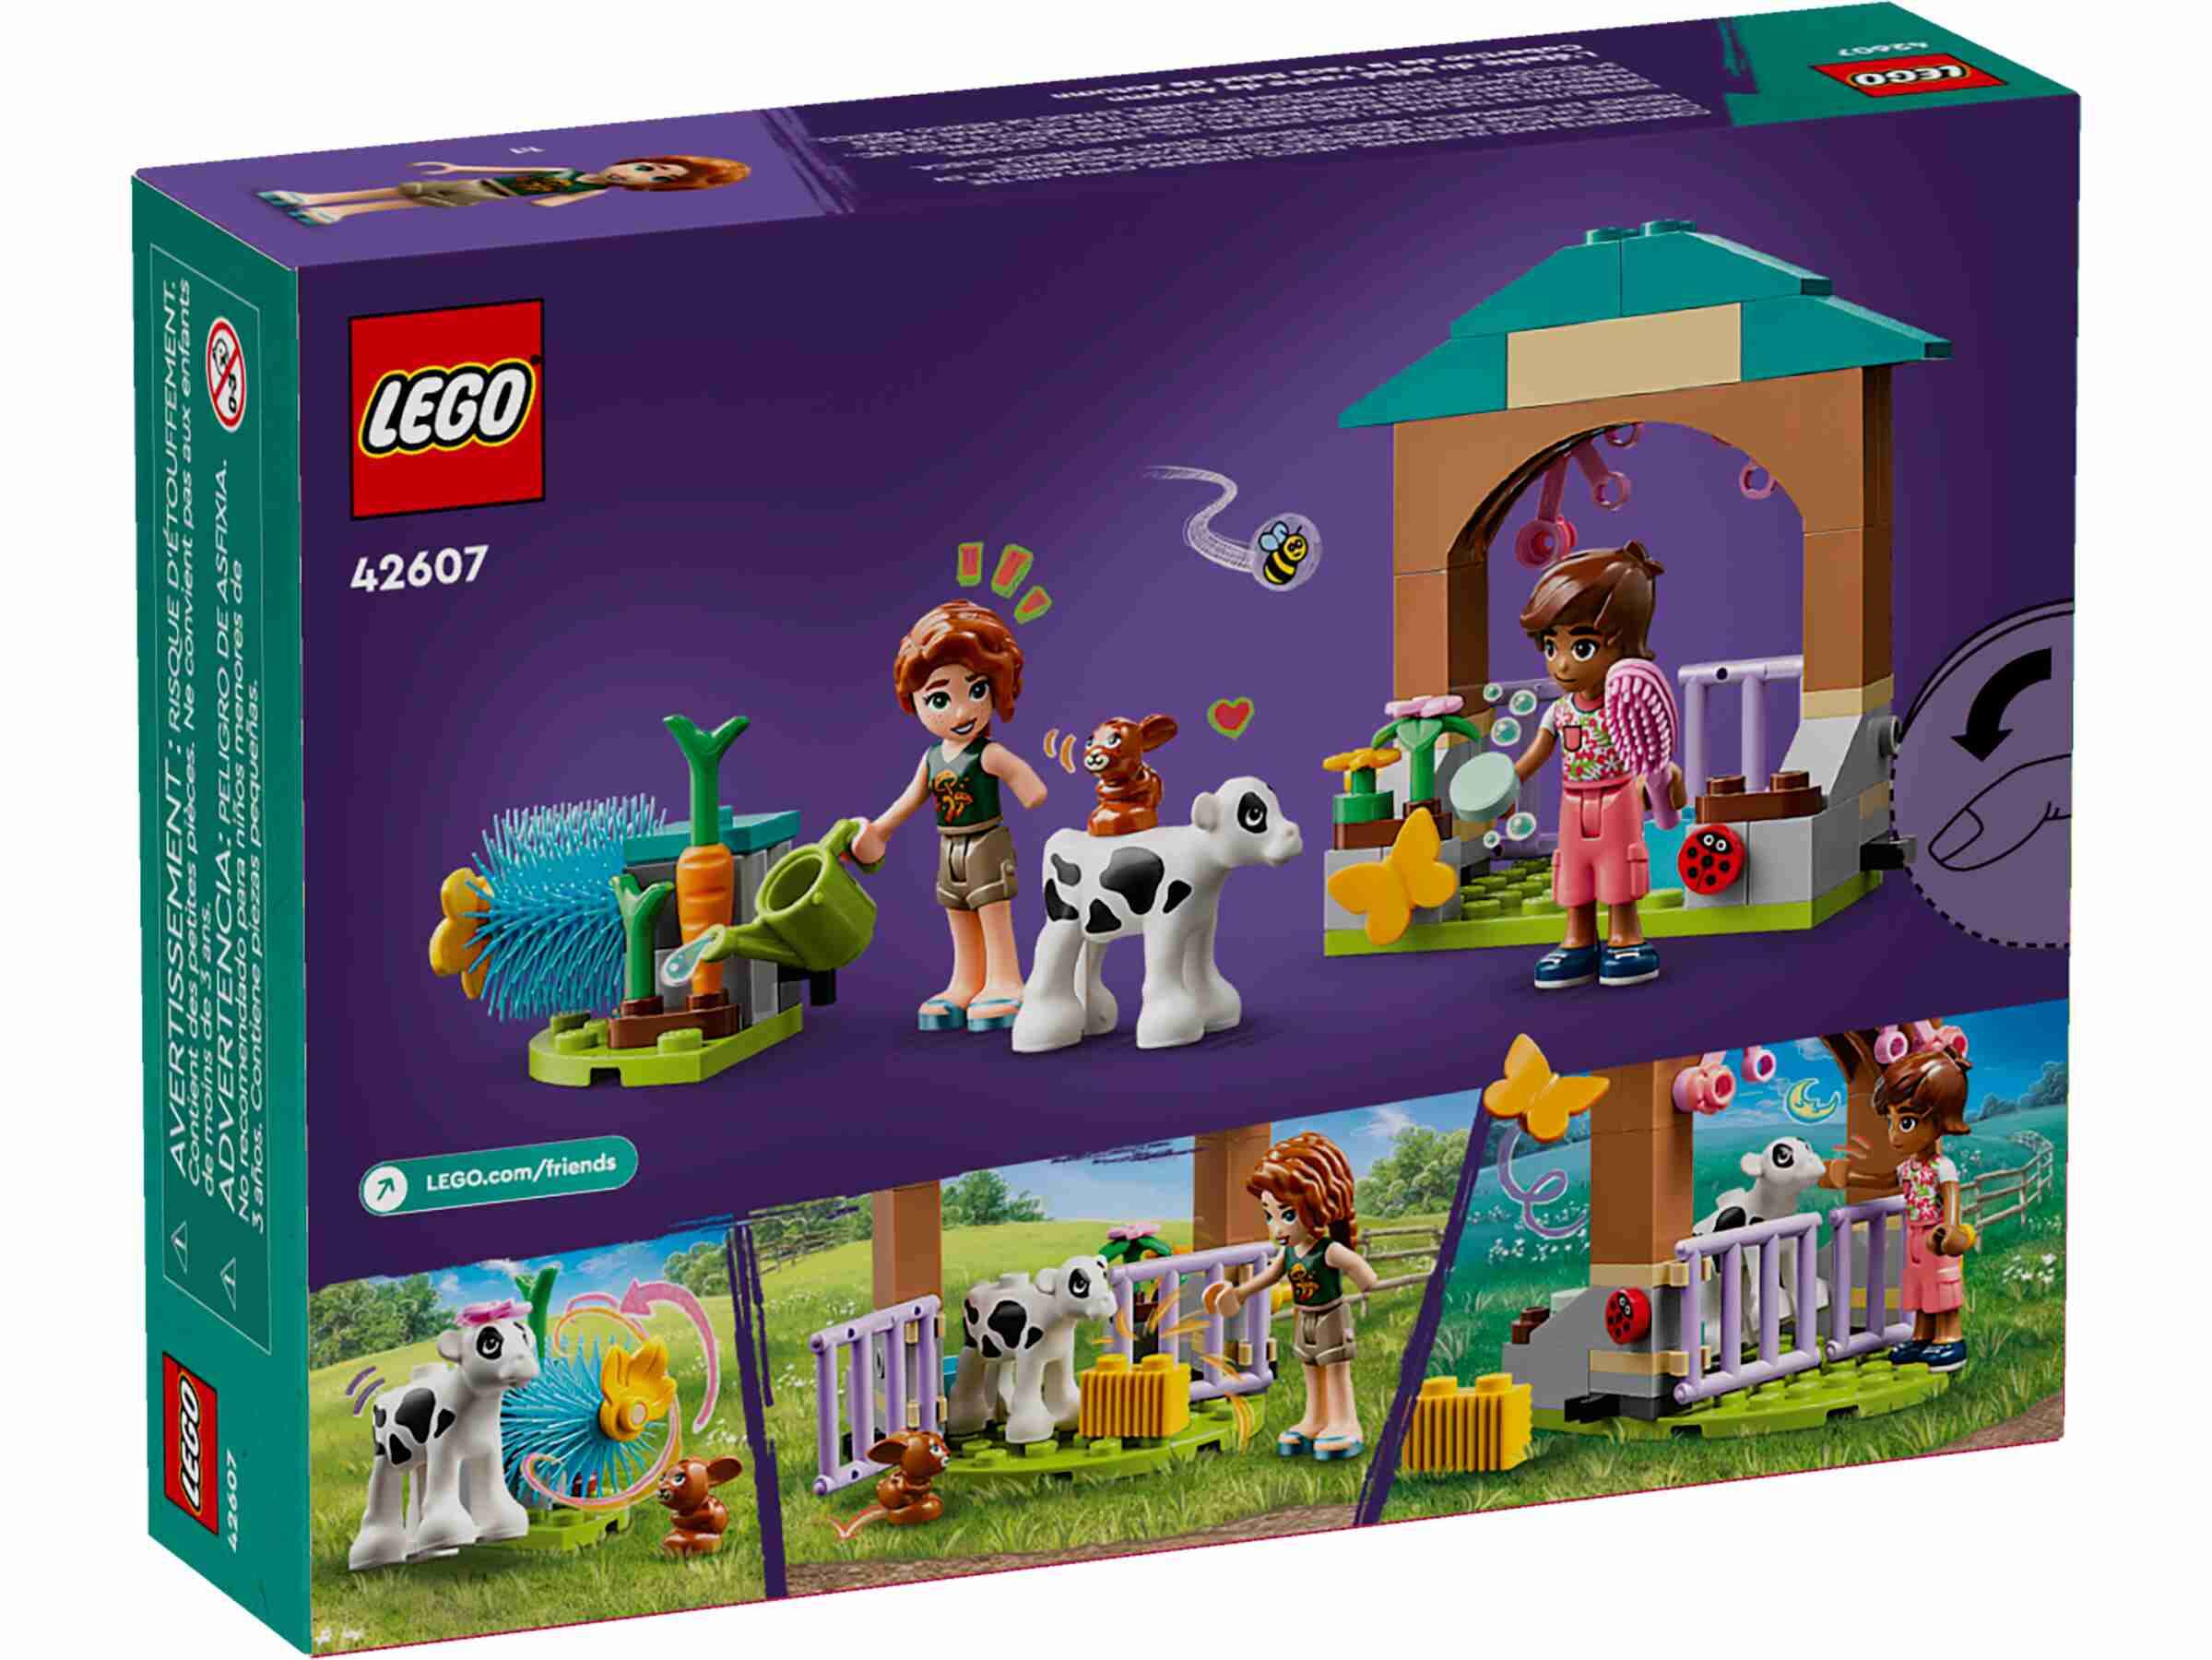 LEGO 42607 Friends Autums Kälbchenstall, 2 Spielfiguren, Kälbchen, Häschen